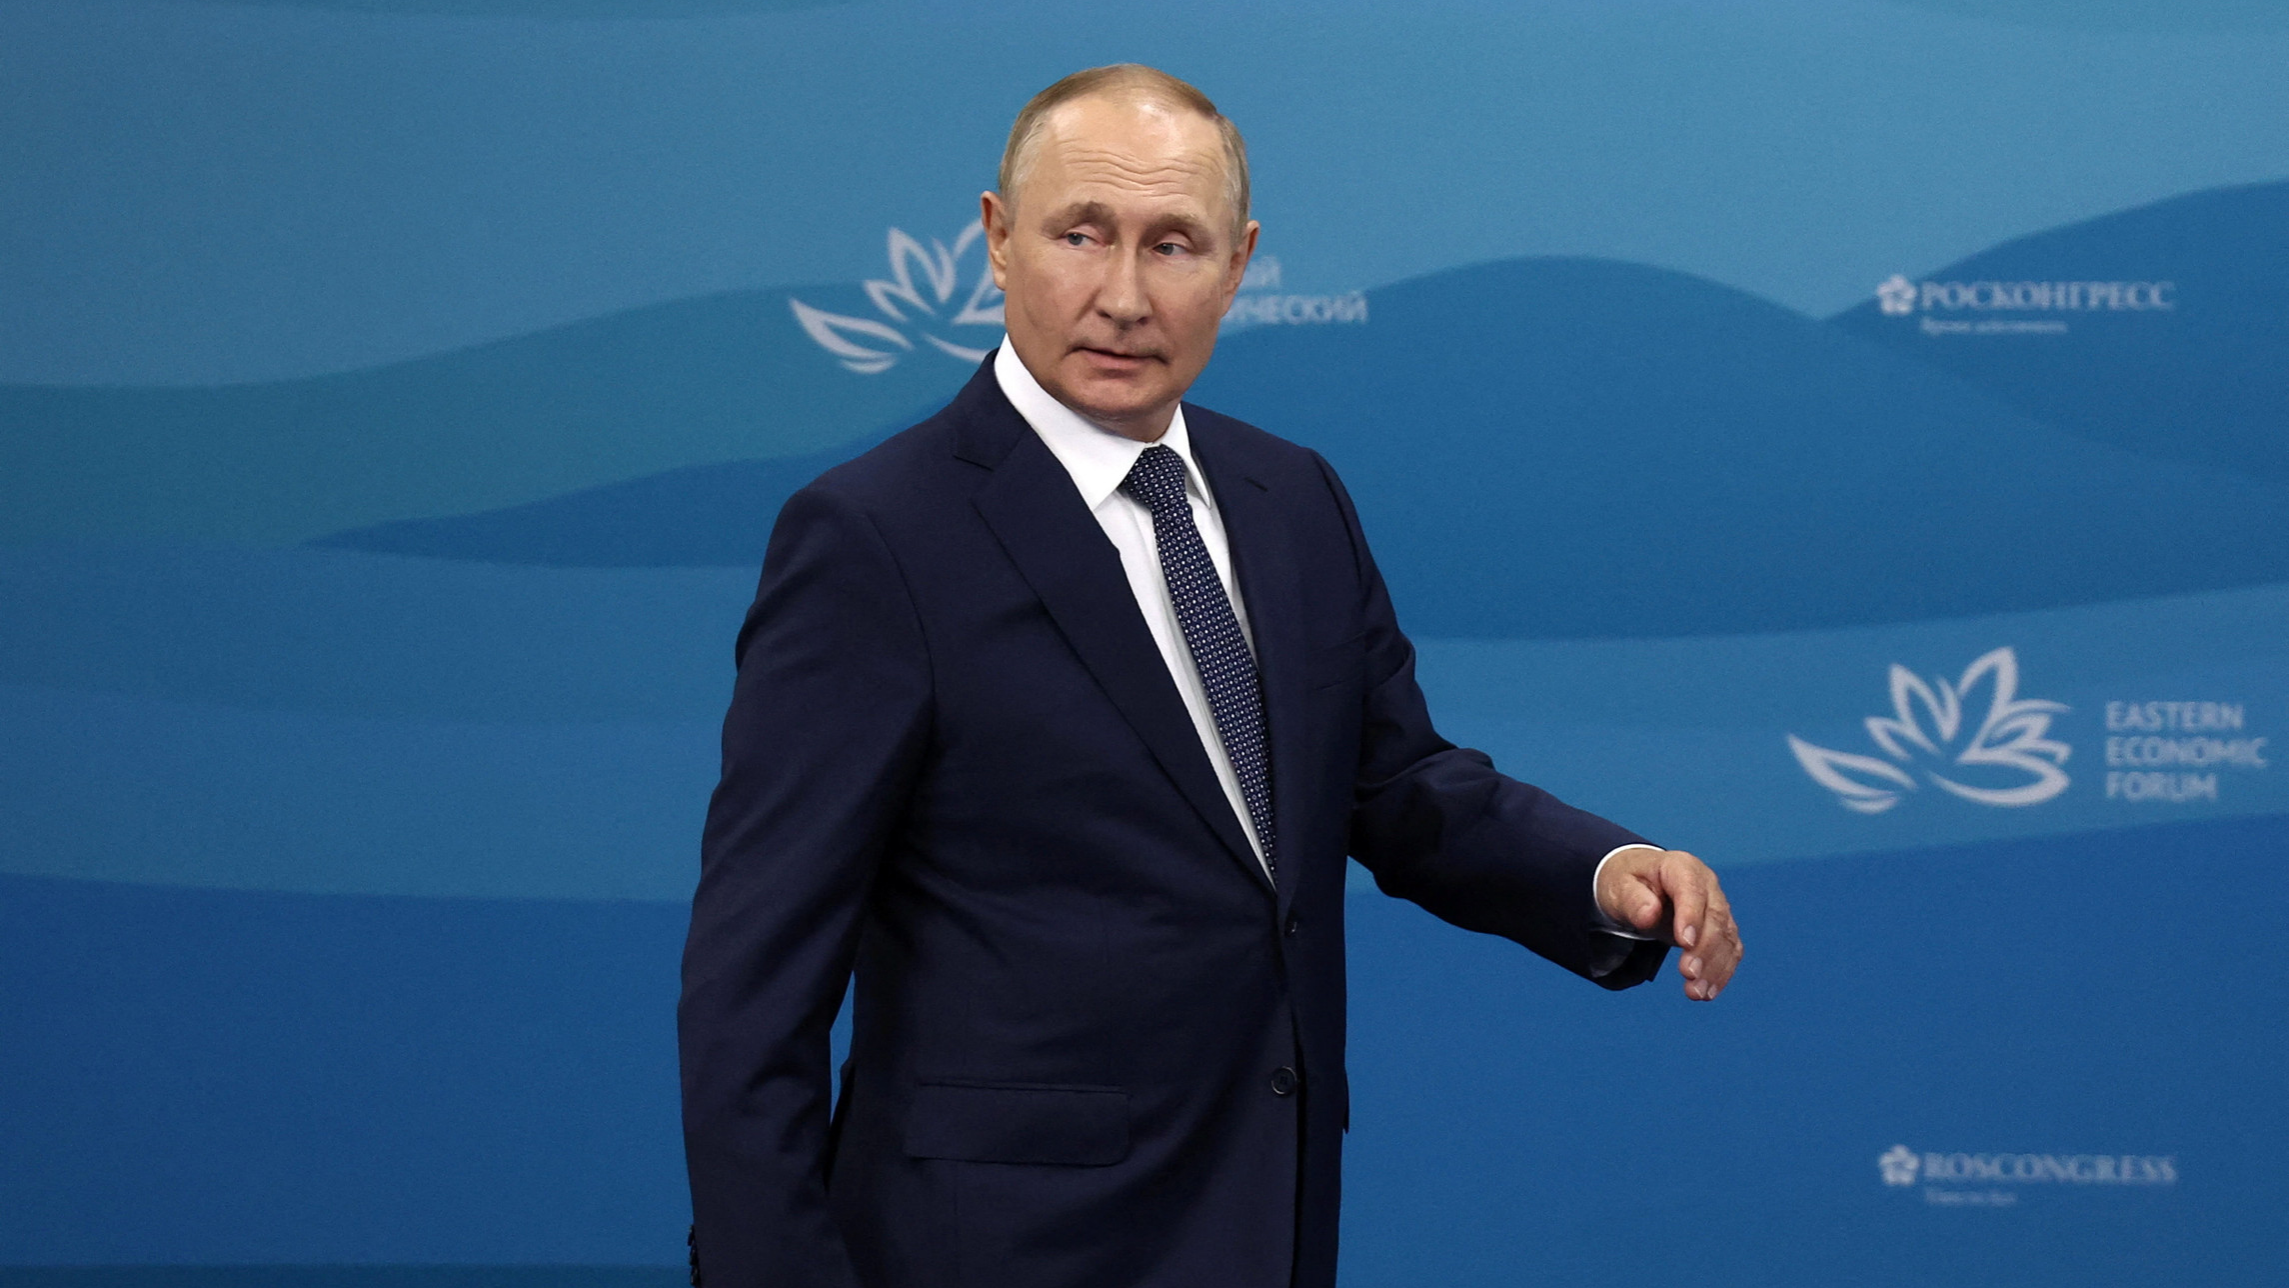 Putin: Hãy xem hình ảnh về Putin để tìm hiểu về nhà lãnh đạo mạnh mẽ, nổi tiếng của Nga và các quyết định quan trọng đã được ông đưa ra trong quá khứ và hiện tại.